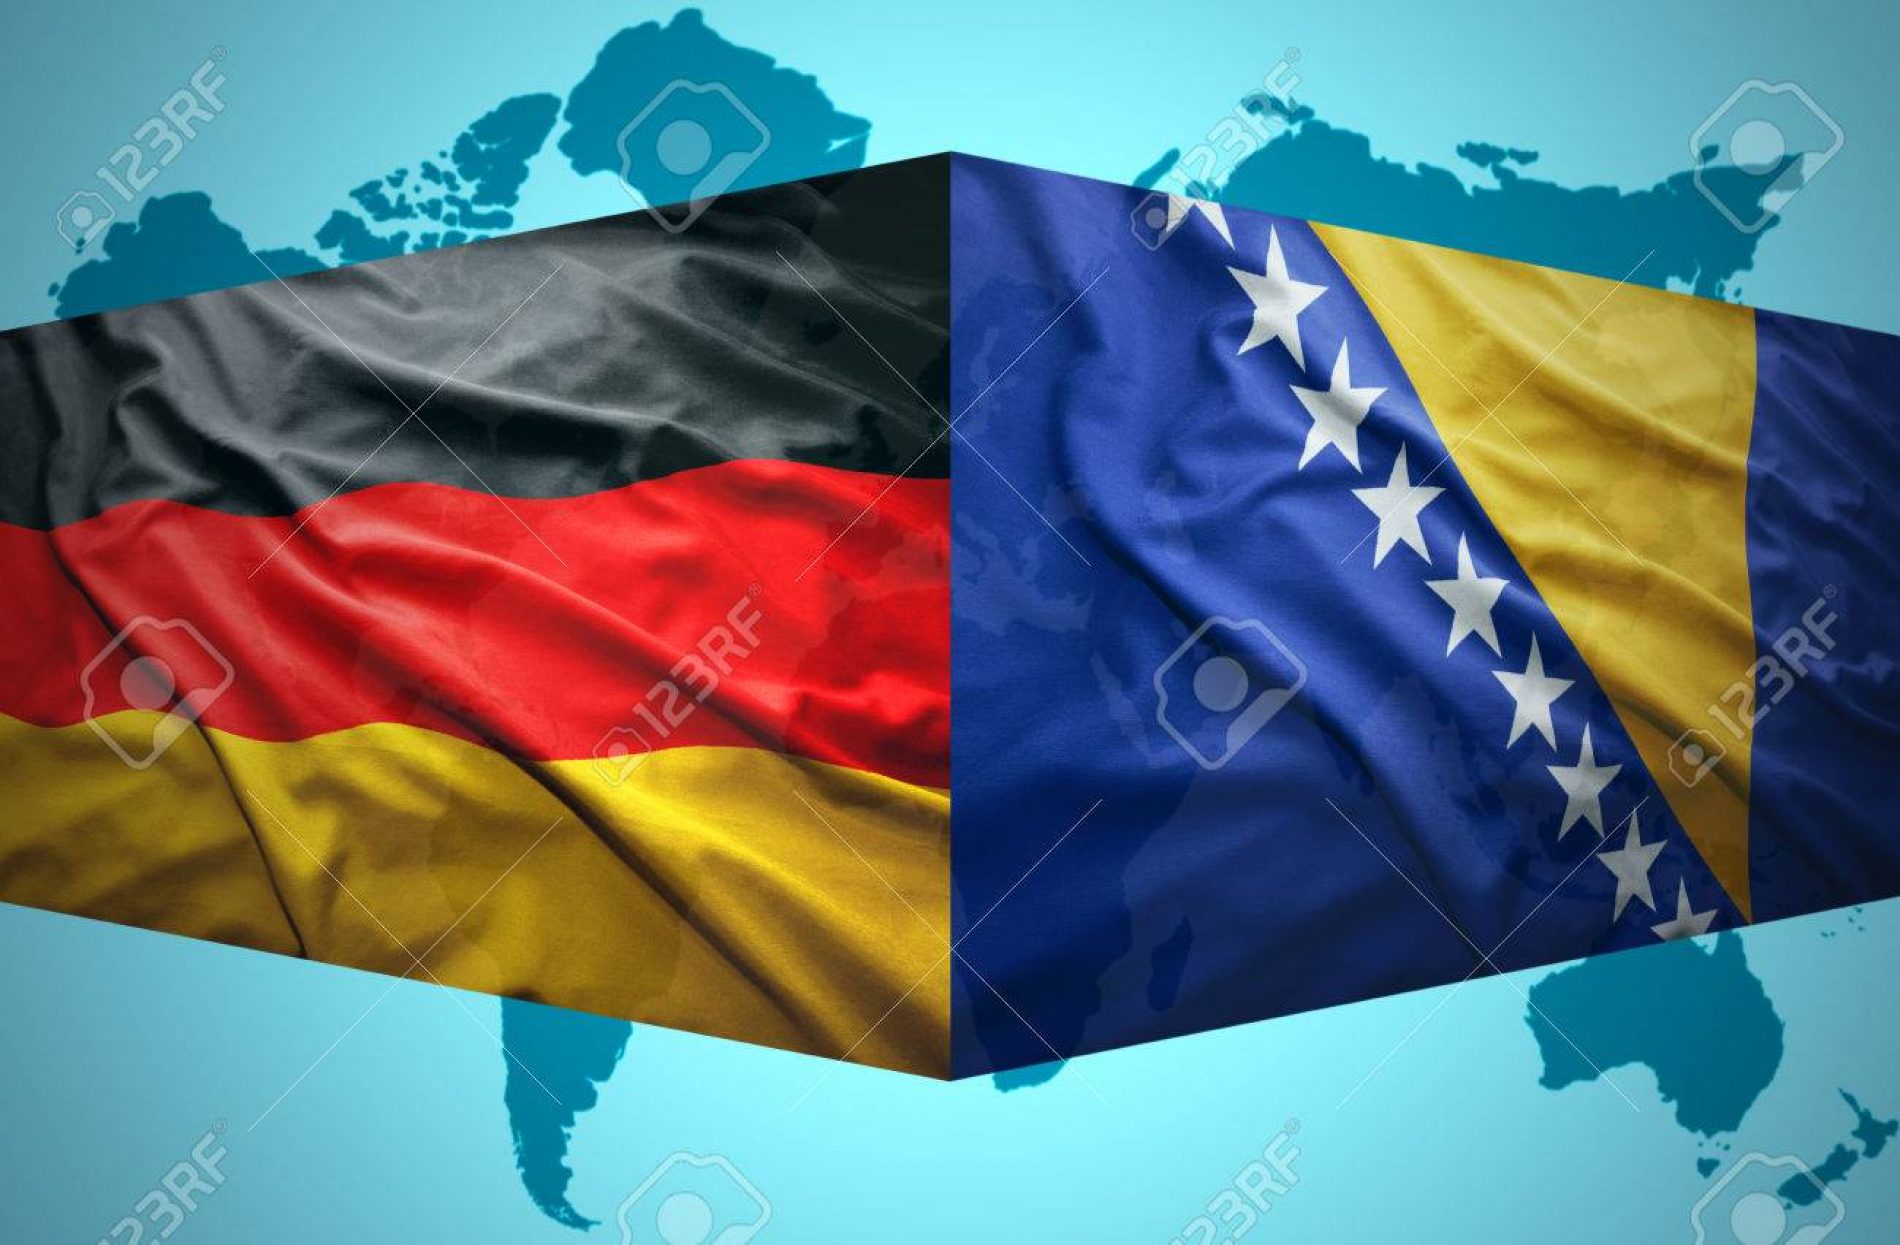 Bosna na djelu: Premijer Novalić ponudio pomoć Njemačkoj